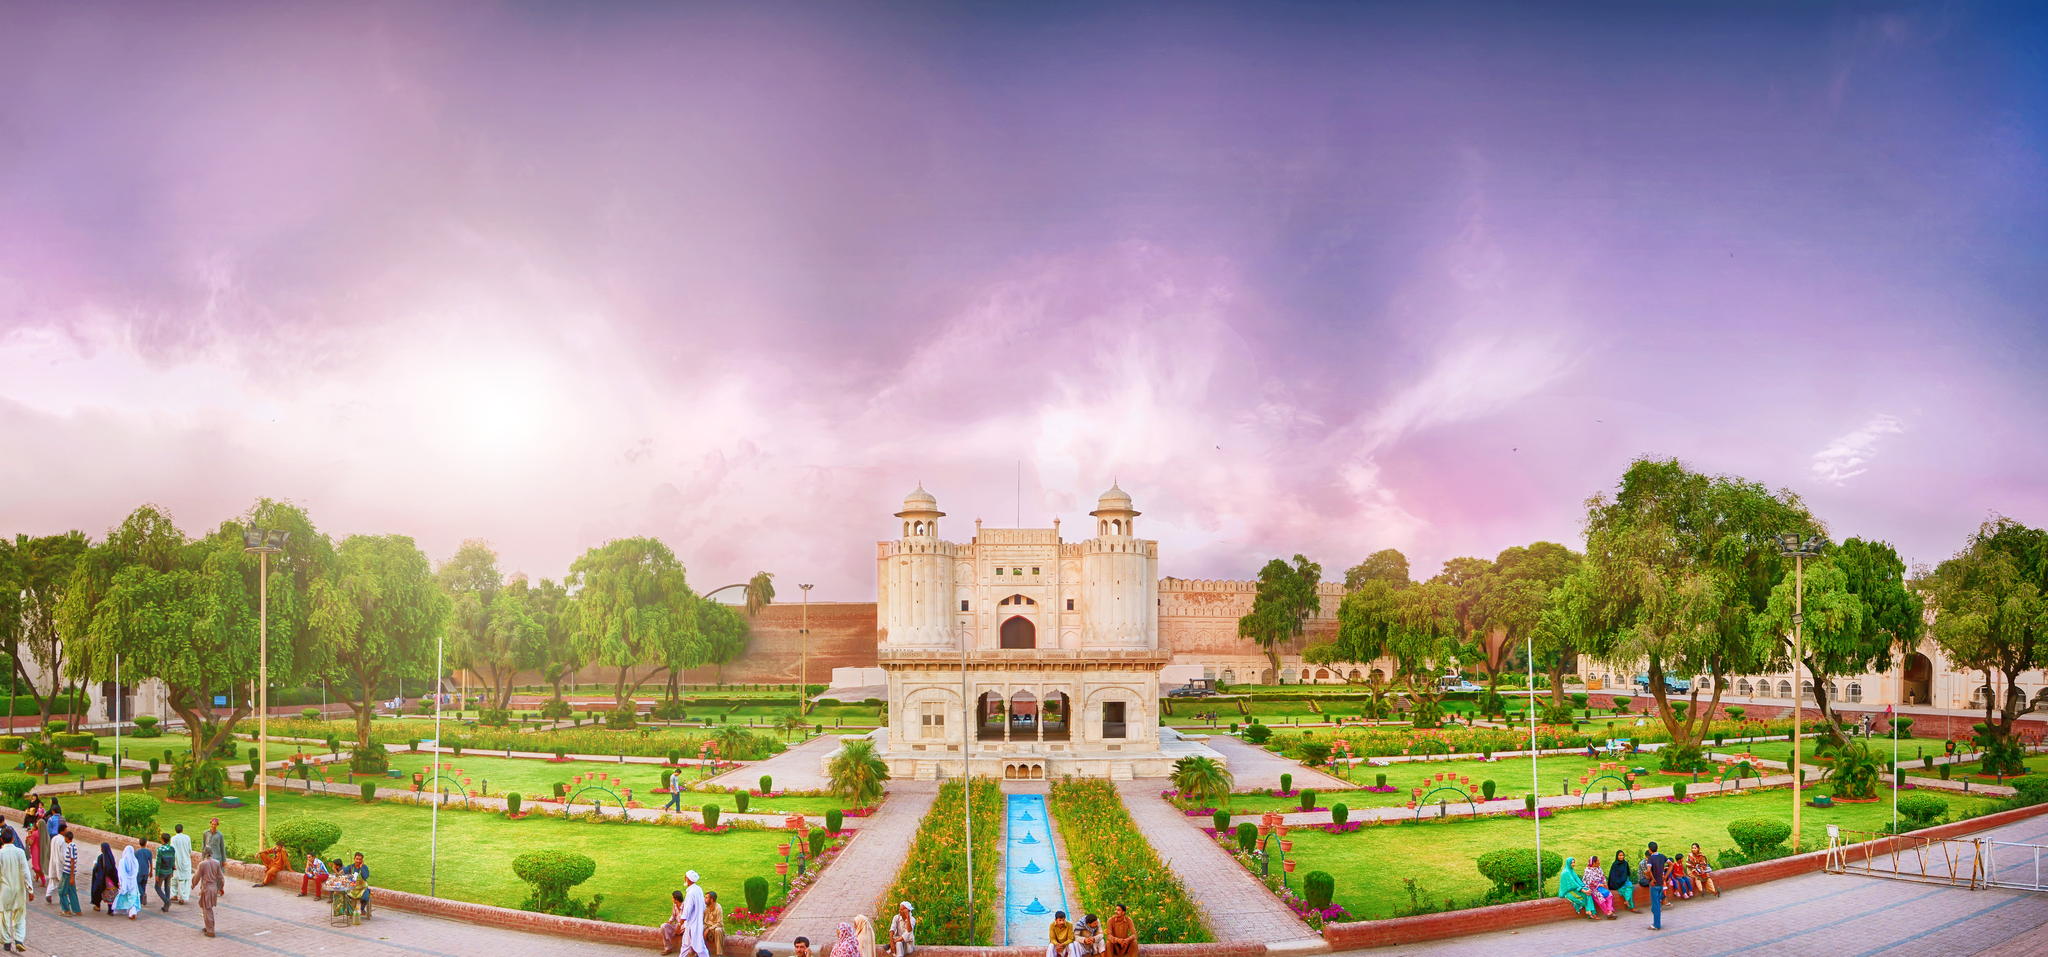 インダス文明の中心！パキスタンで必ず行くべきオススメ観光スポット10選